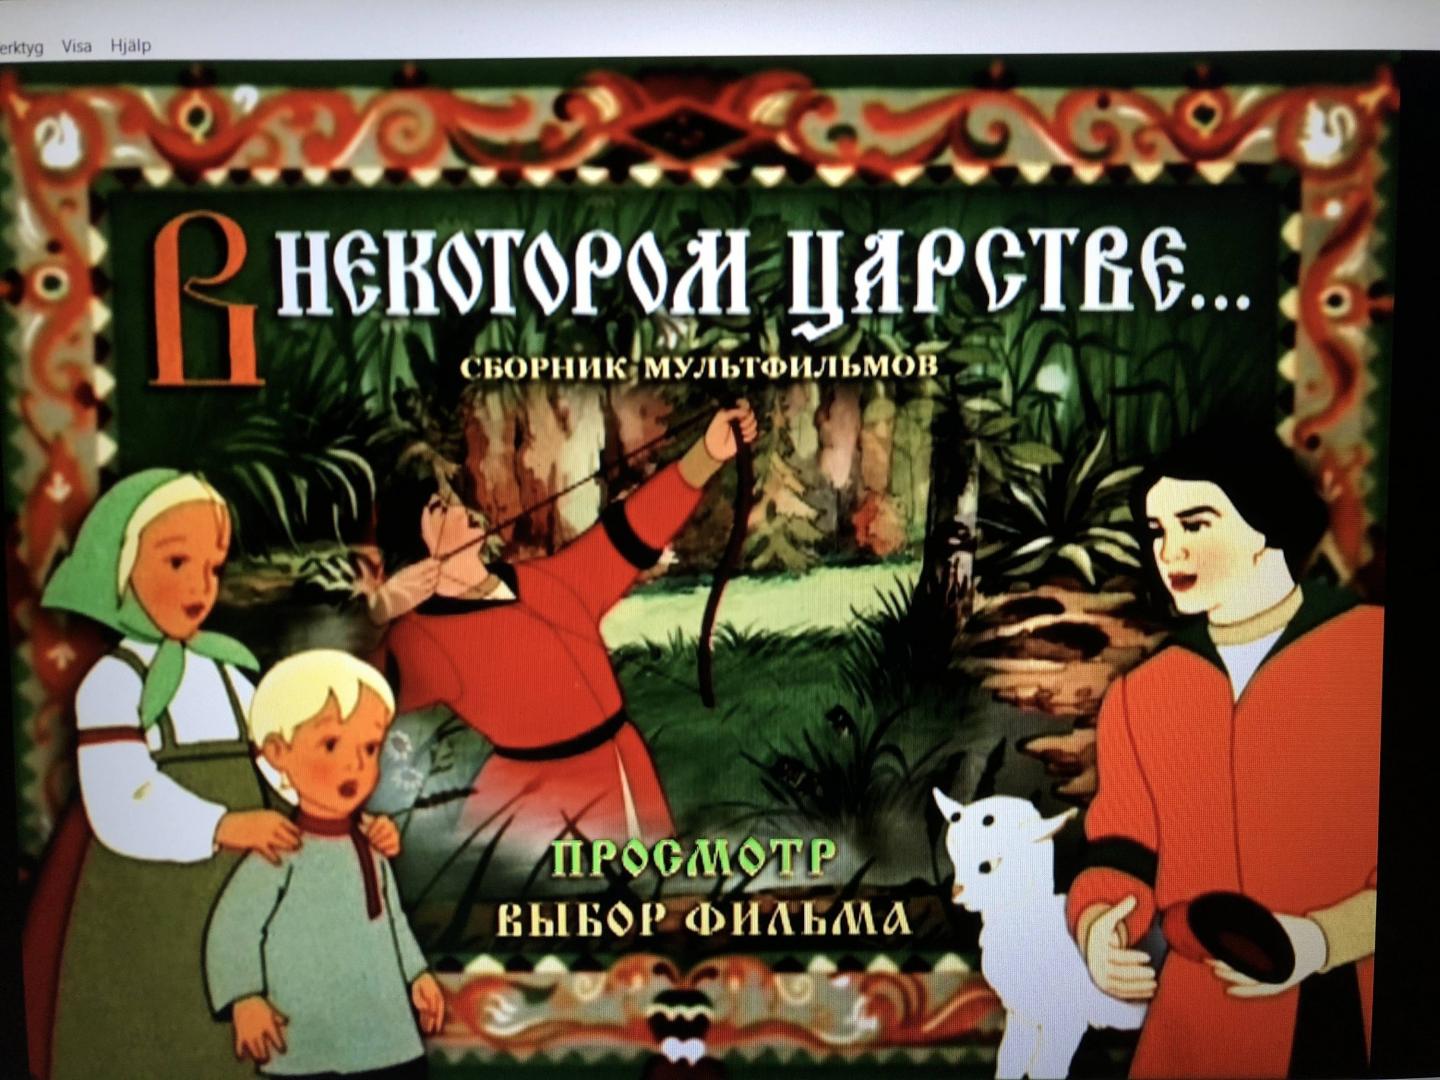 Включи сказка 5. Русские сказки 1 4 DVD Лабиринт. Сказки русских писателей DVD твйк.